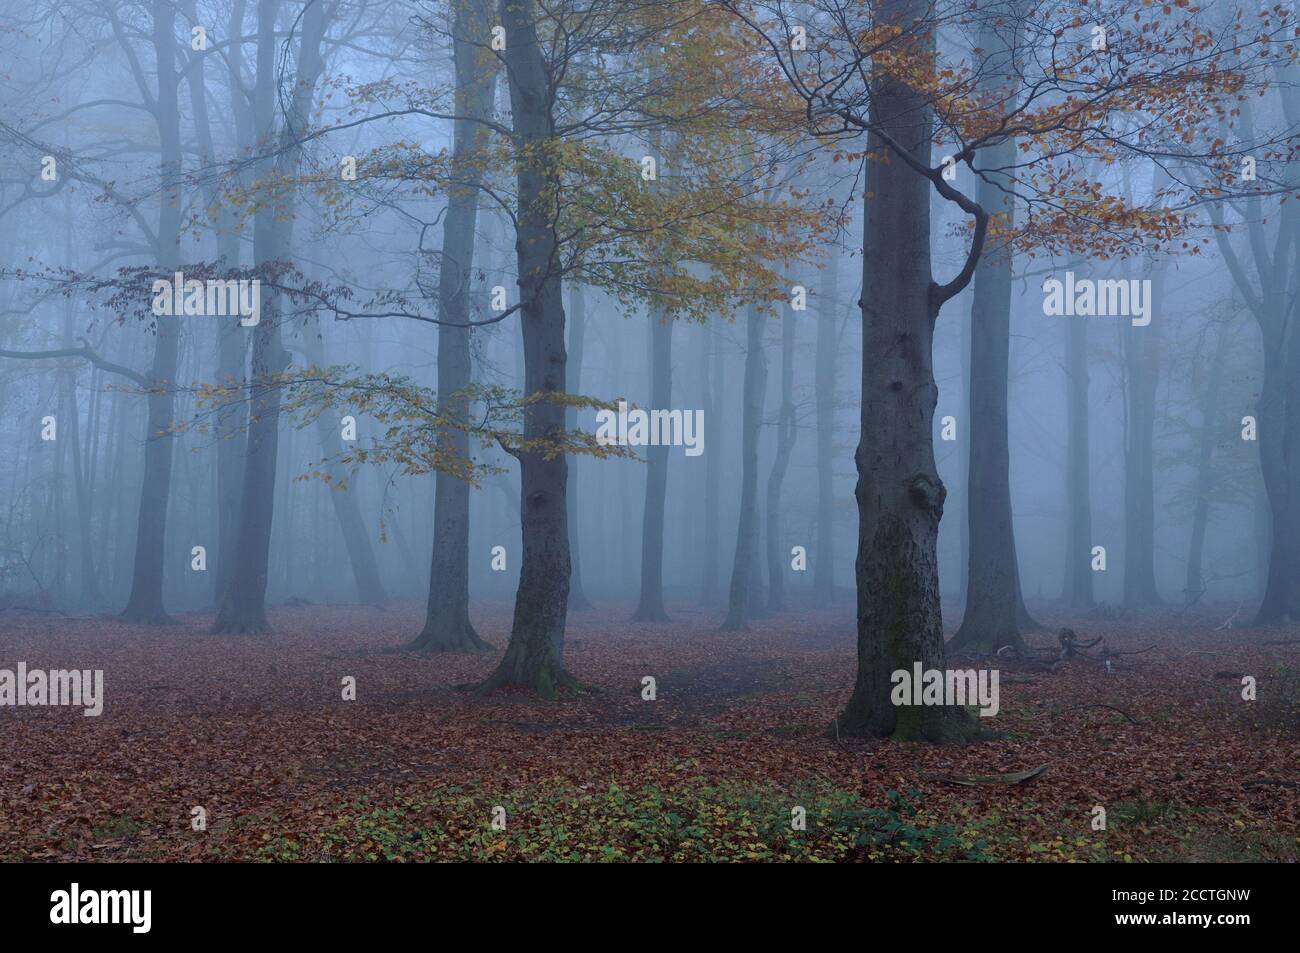 Vieille forêt de hêtre dans l'humeur d'automne, décoloration des feuilles, chute des feuilles, brouillard épais à l'heure bleue, jour typique de novembre, Europe. Banque D'Images